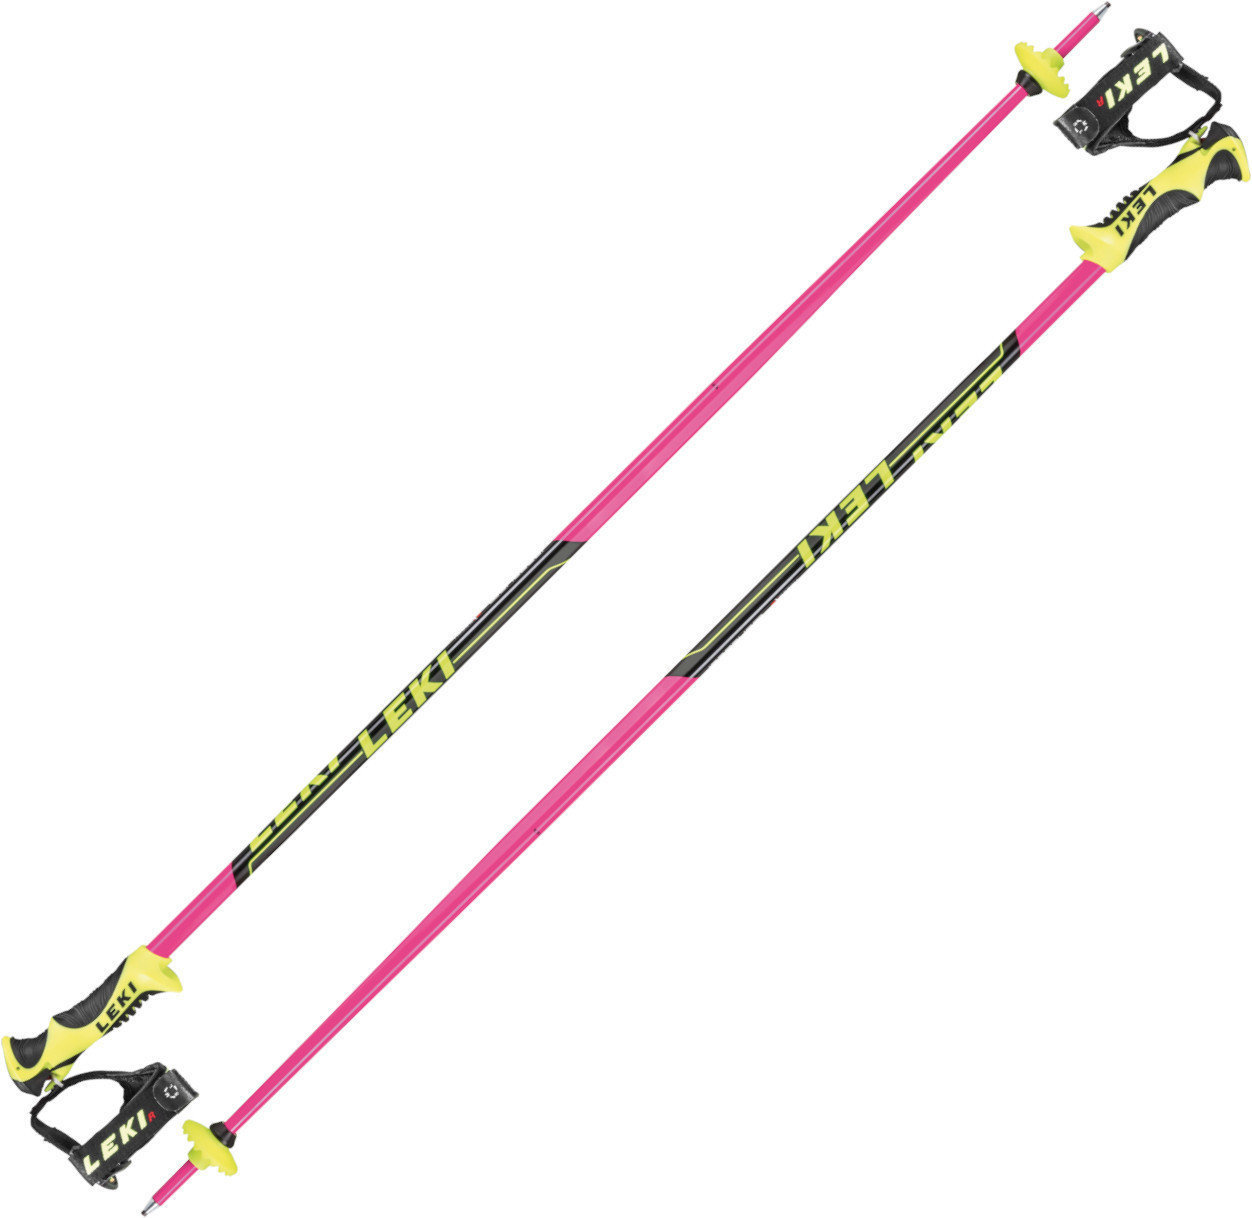 Ski Poles Leki Worldcup Lite SL Pink/Black/White/Yellow 115 cm Ski Poles